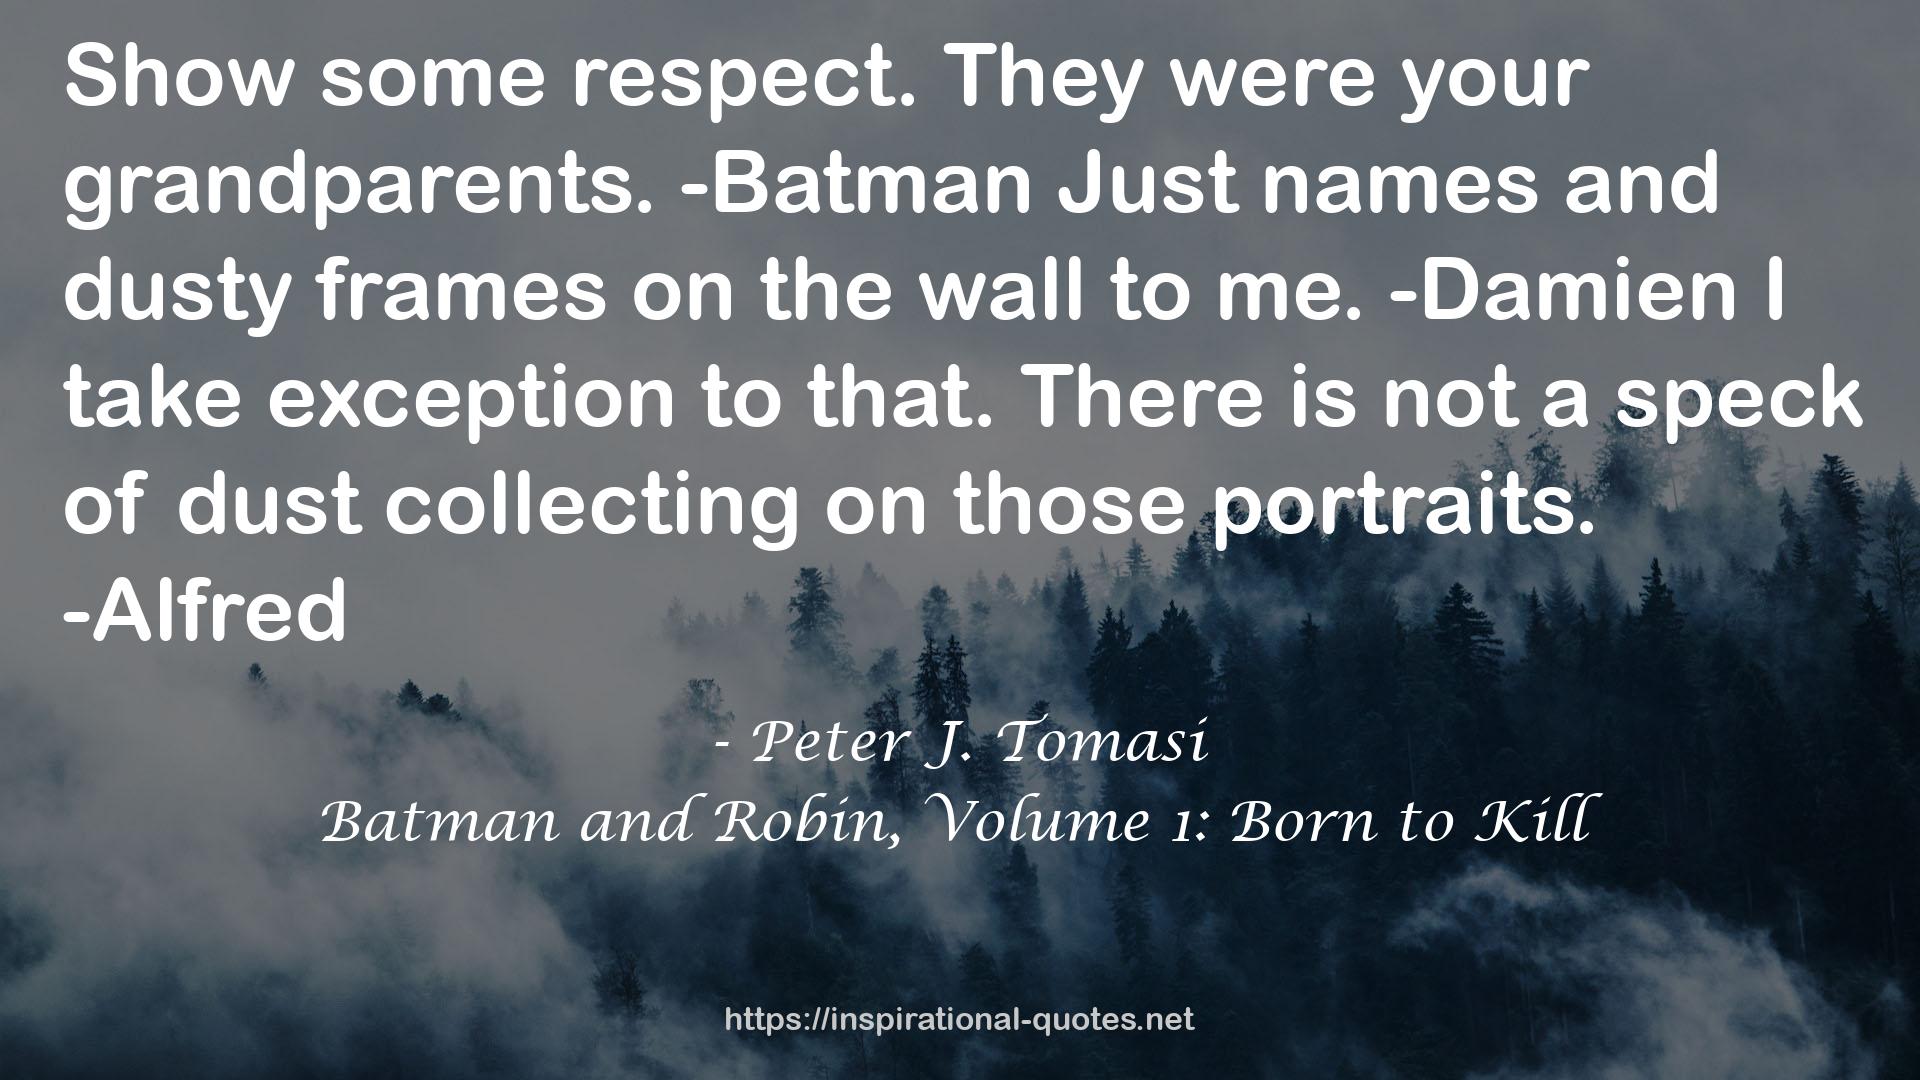 Batman and Robin, Volume 1: Born to Kill QUOTES